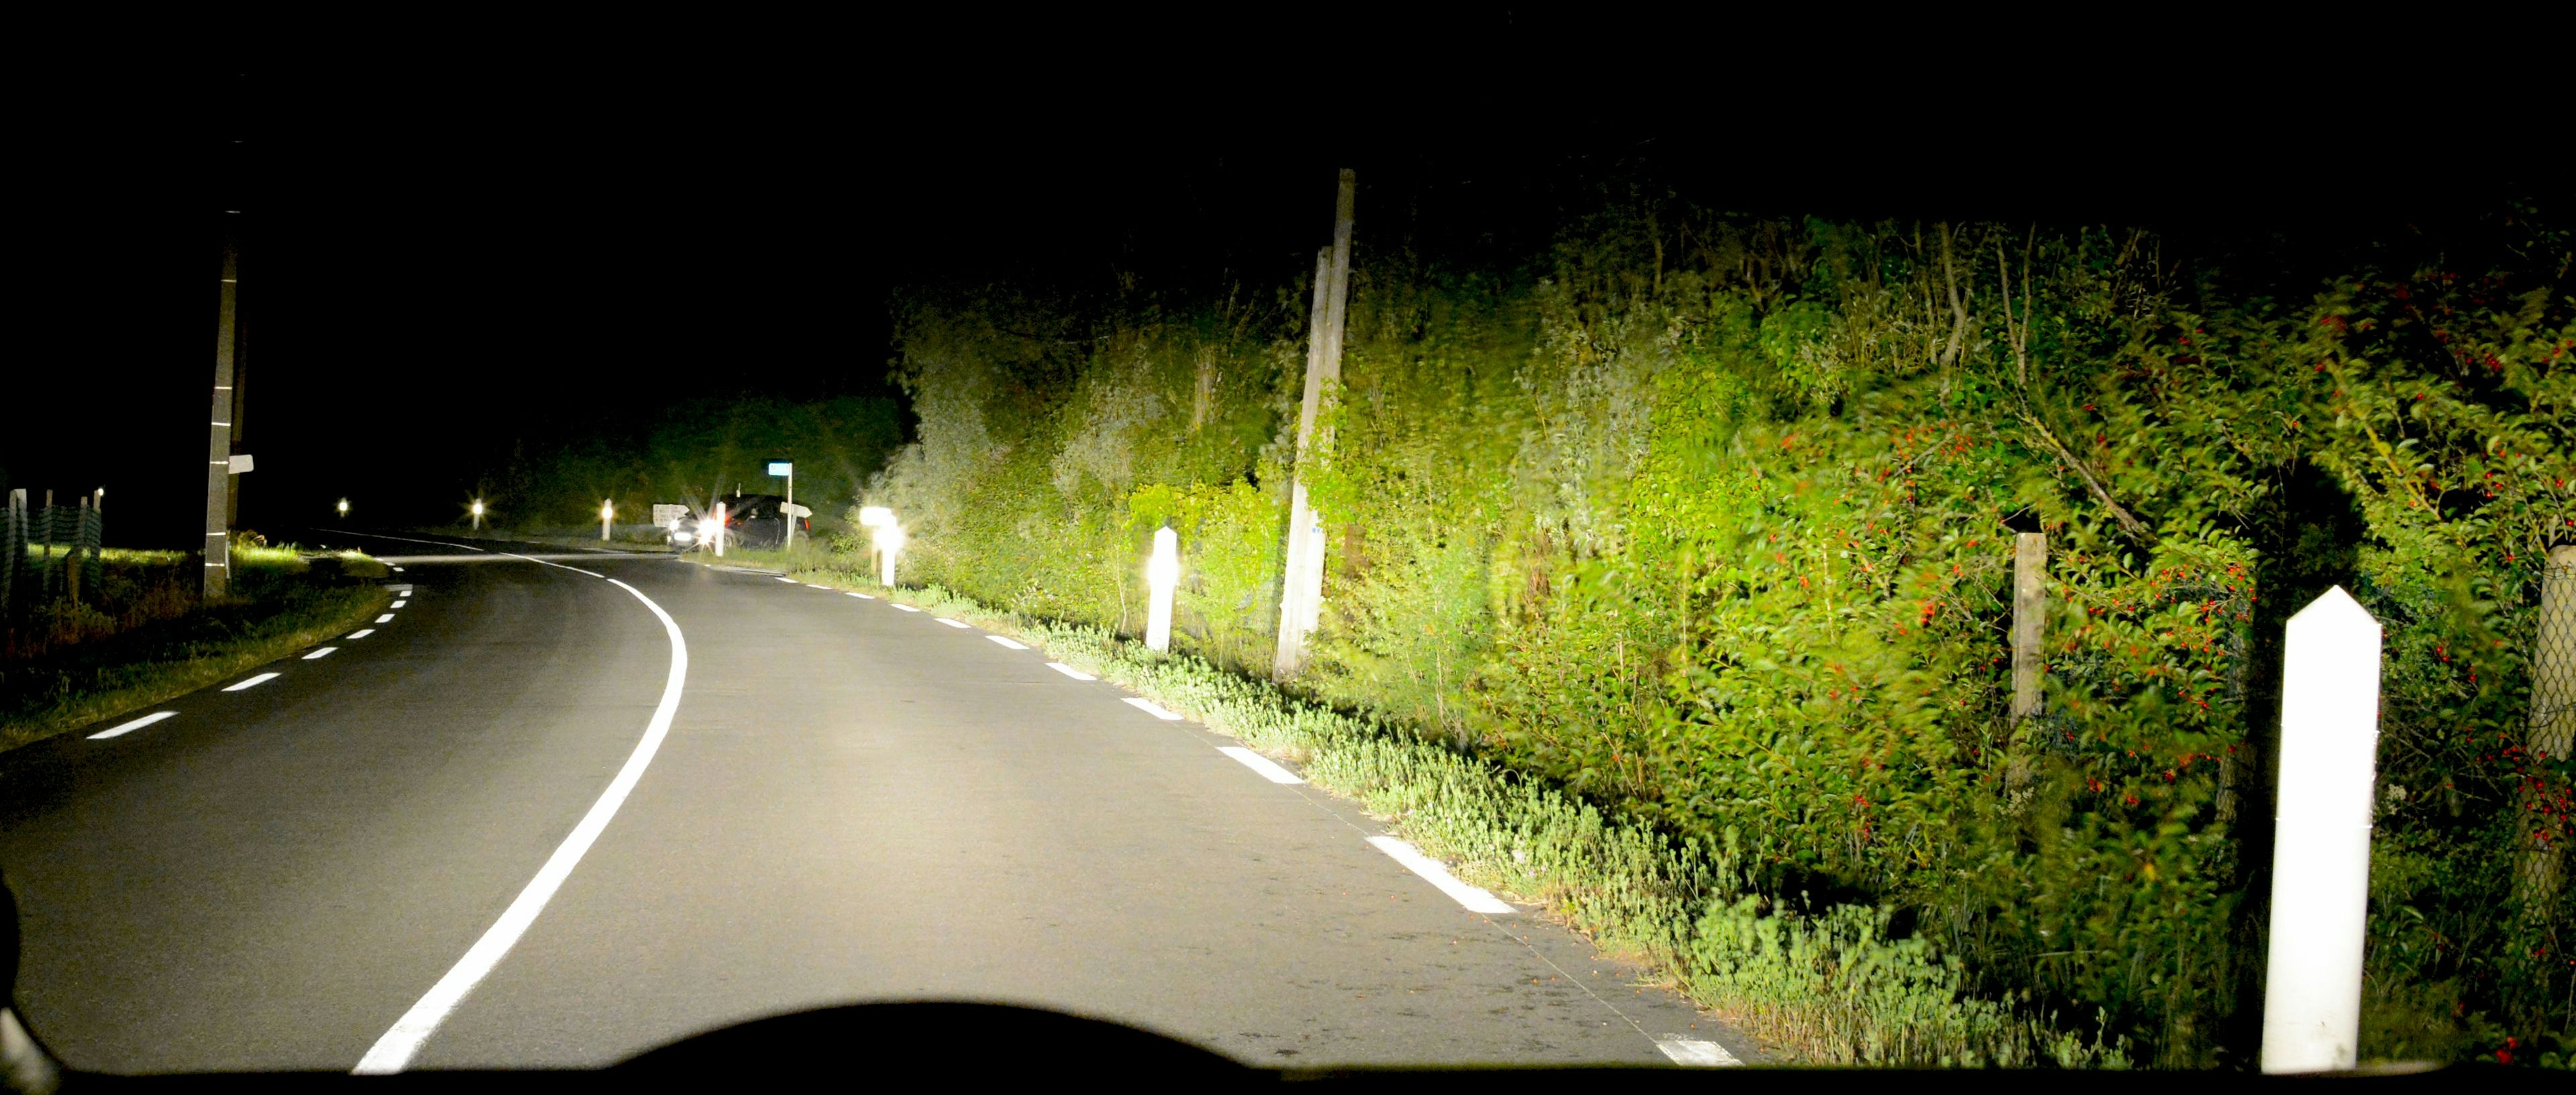 Route de nuit - Ah, le bon temps où l'on accessoirisait sa voiture !